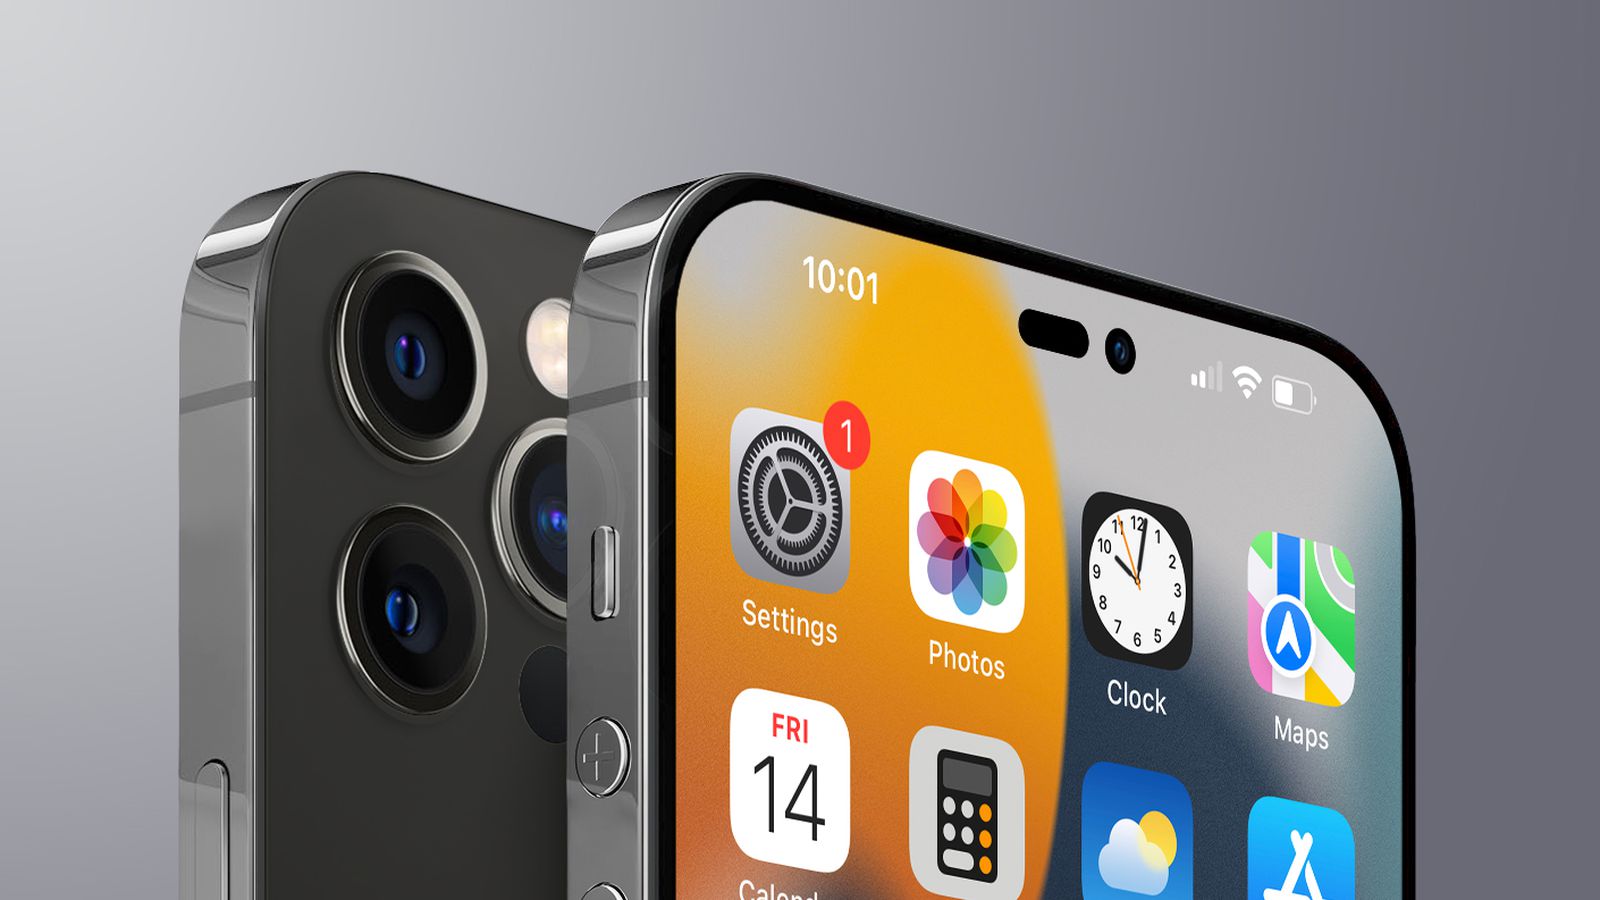 ProMotion iPhone 14 Pro là một trong những tính năng ưu việt của chiếc iPhone 14 Pro sắp ra mắt. Công nghệ ProMotion mang đến tốc độ làm mới 120hz, giúp cho hình ảnh trên màn hình trở nên mượt mà, sắc nét và đầy màu sắc. Hãy cùng khám phá thêm về đặc điểm này trên chiếc iPhone 14 Pro đang hứa hẹn sẽ \